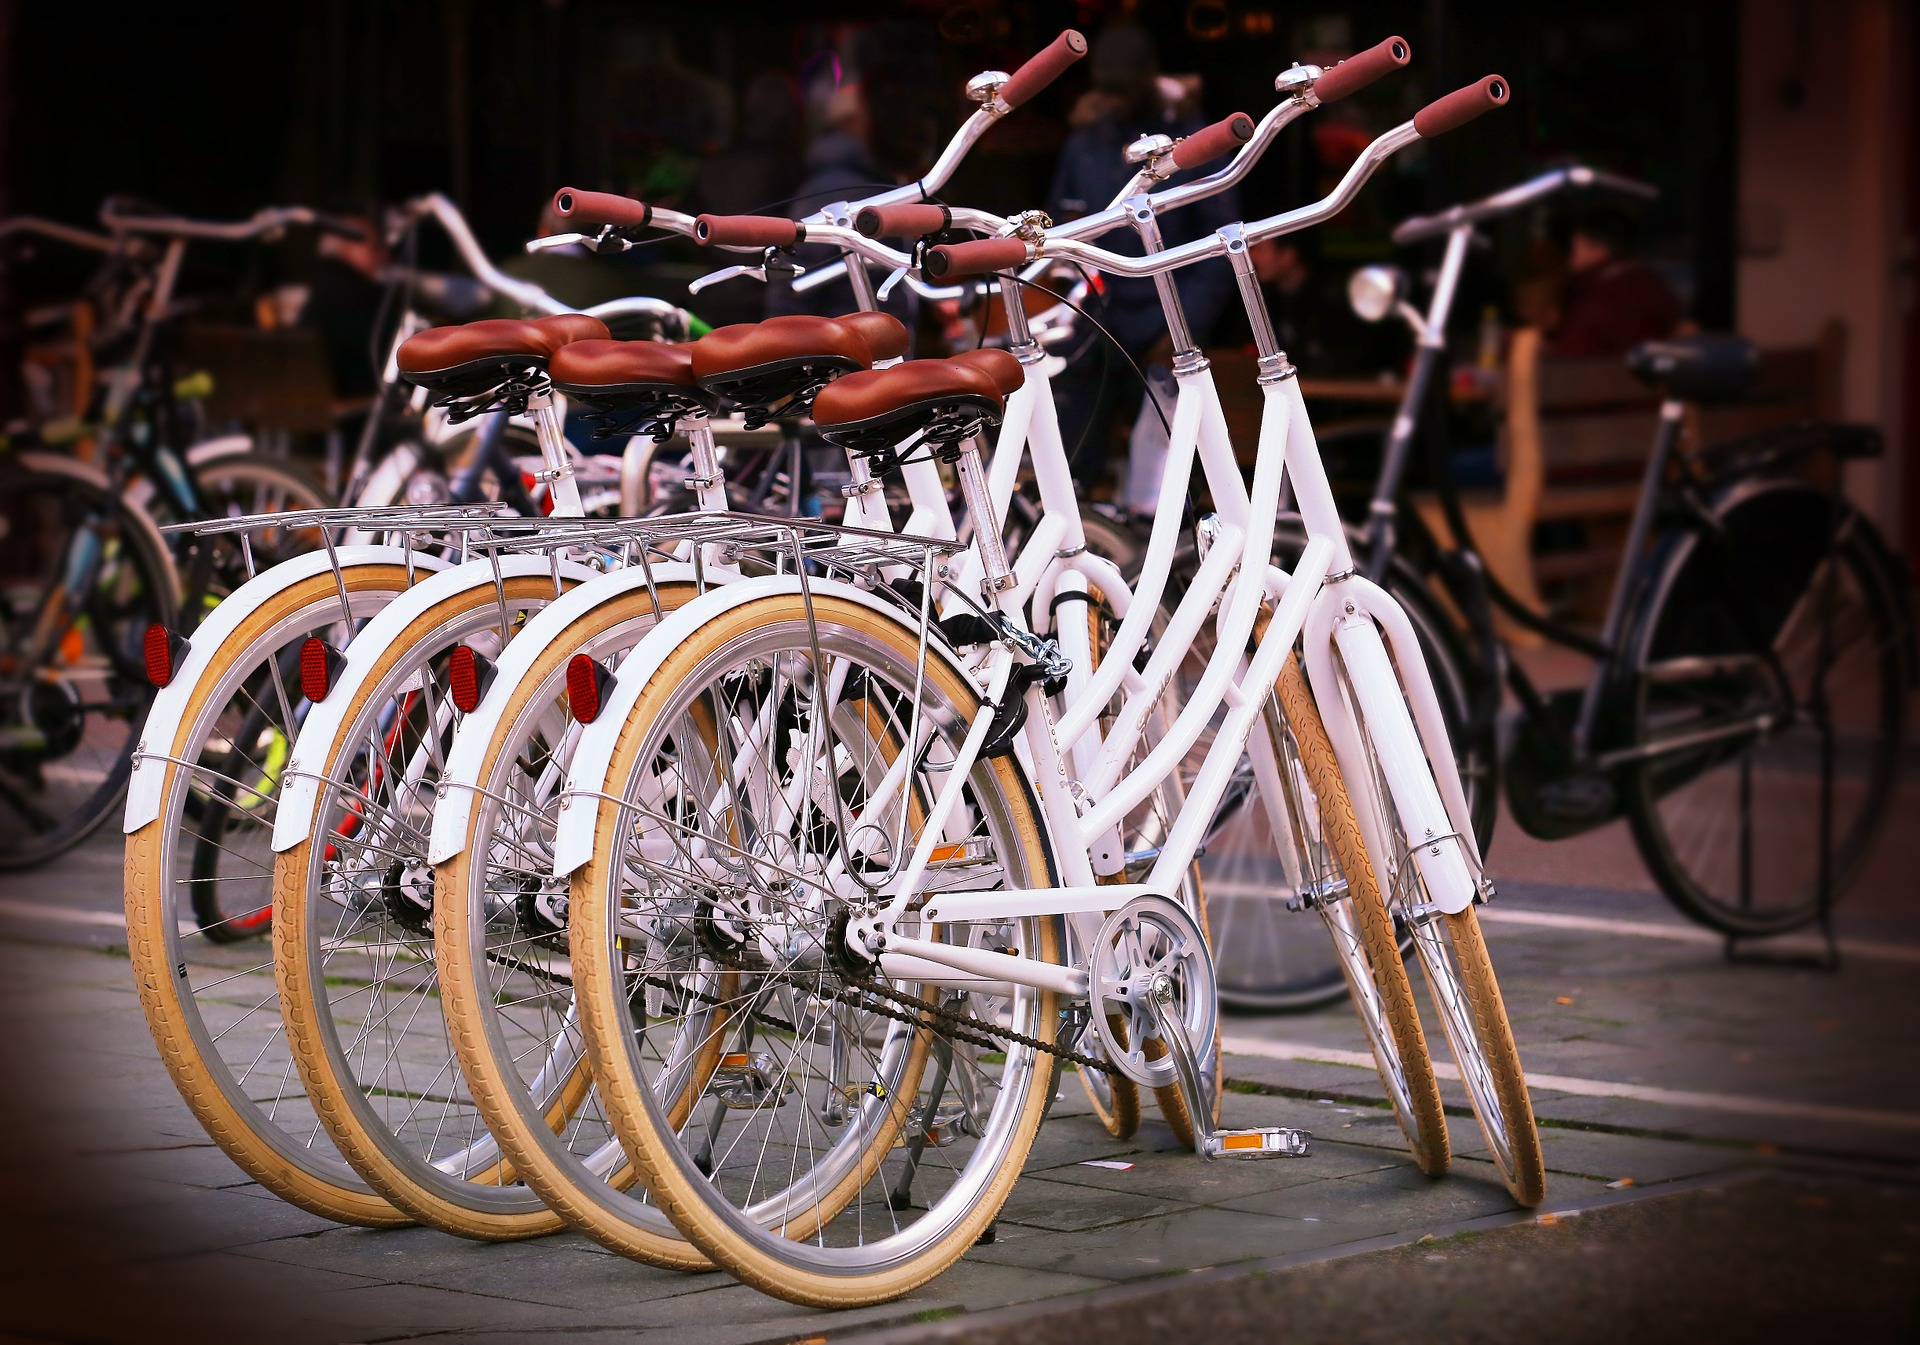 Blatníky je možné na bicykel upínať rôznymi spôsobmi. Najskôr preto zistite, aký blatník sa hodí priamo pre váš bicykel.